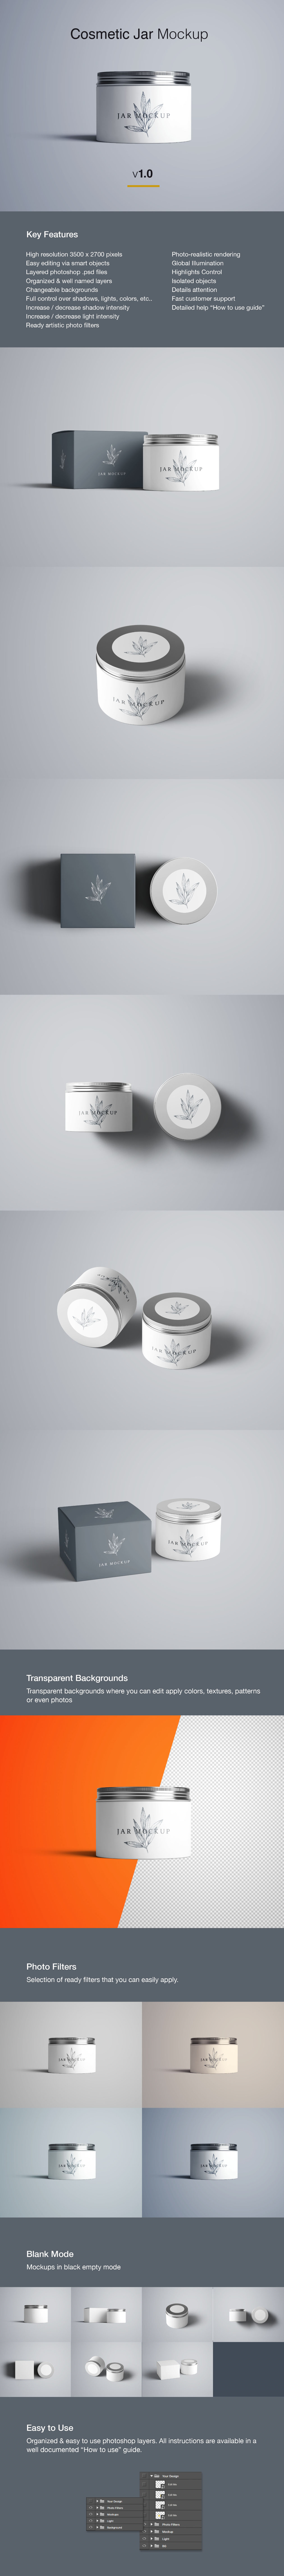 面霜化妆品包装设计效果图样机 Cosmetics Jar & Box Mockups – PSD设计素材模板